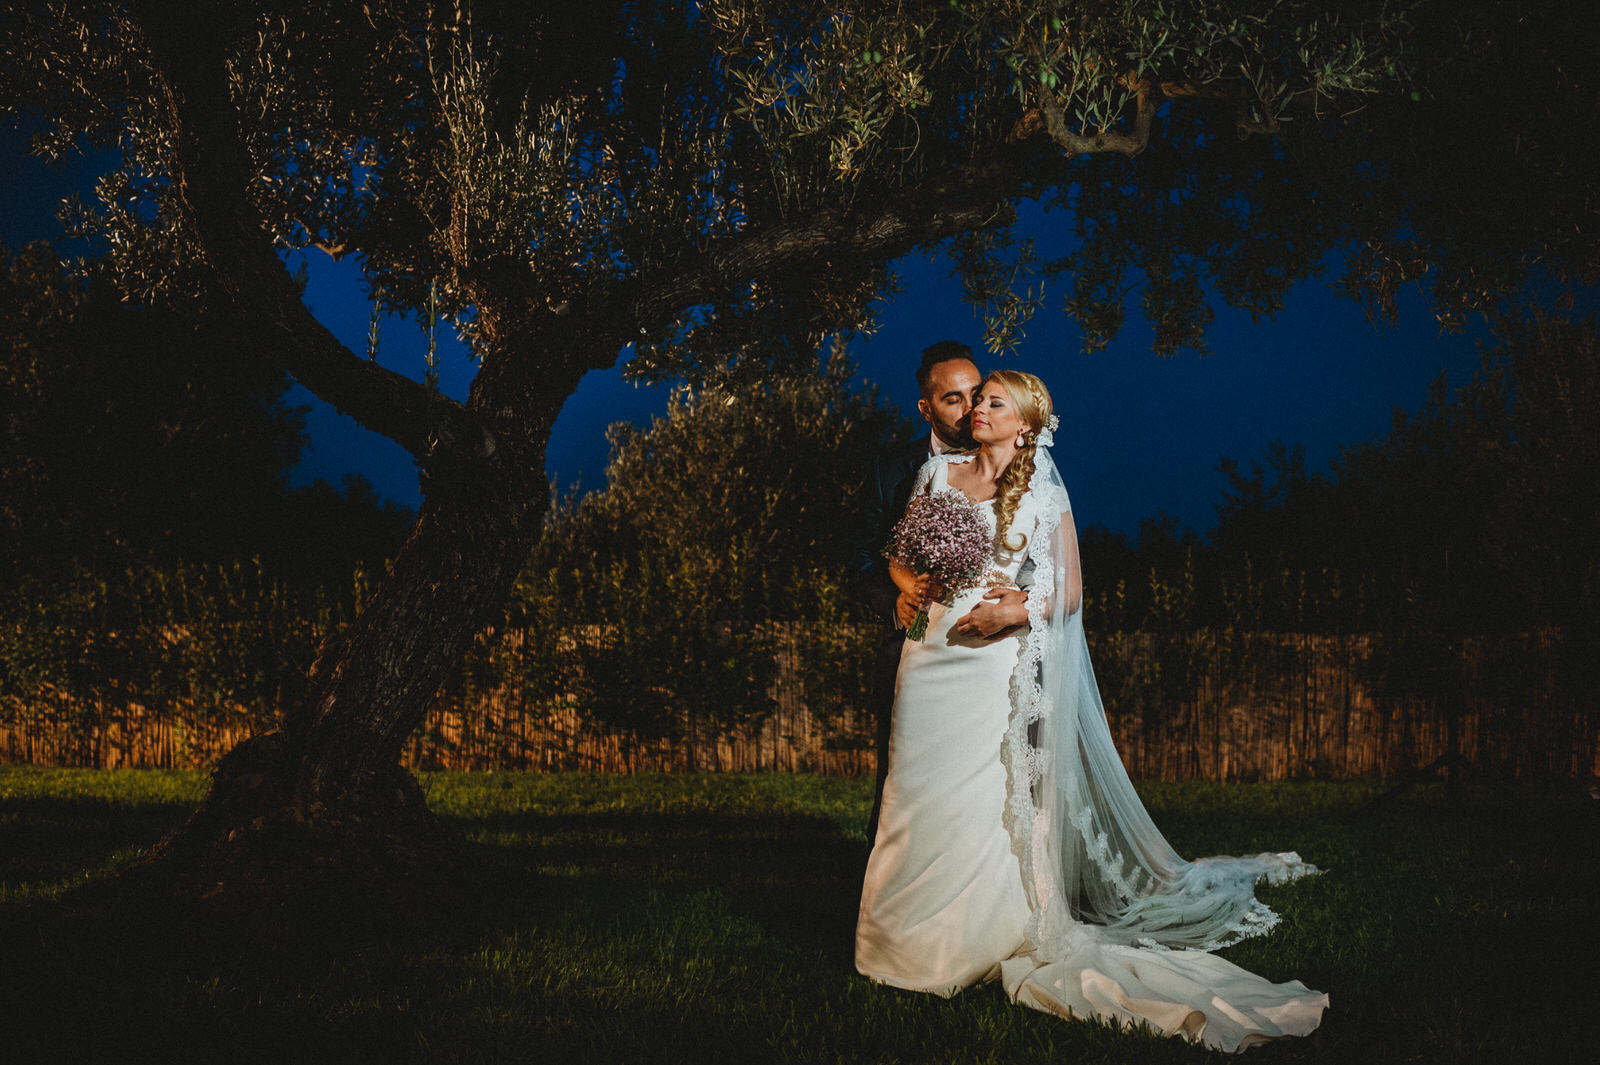 Fotografo de boda en Utrera- Hacienda Cerca de Aragon - María & Antonio - Andrés Amarillo (18).JPG